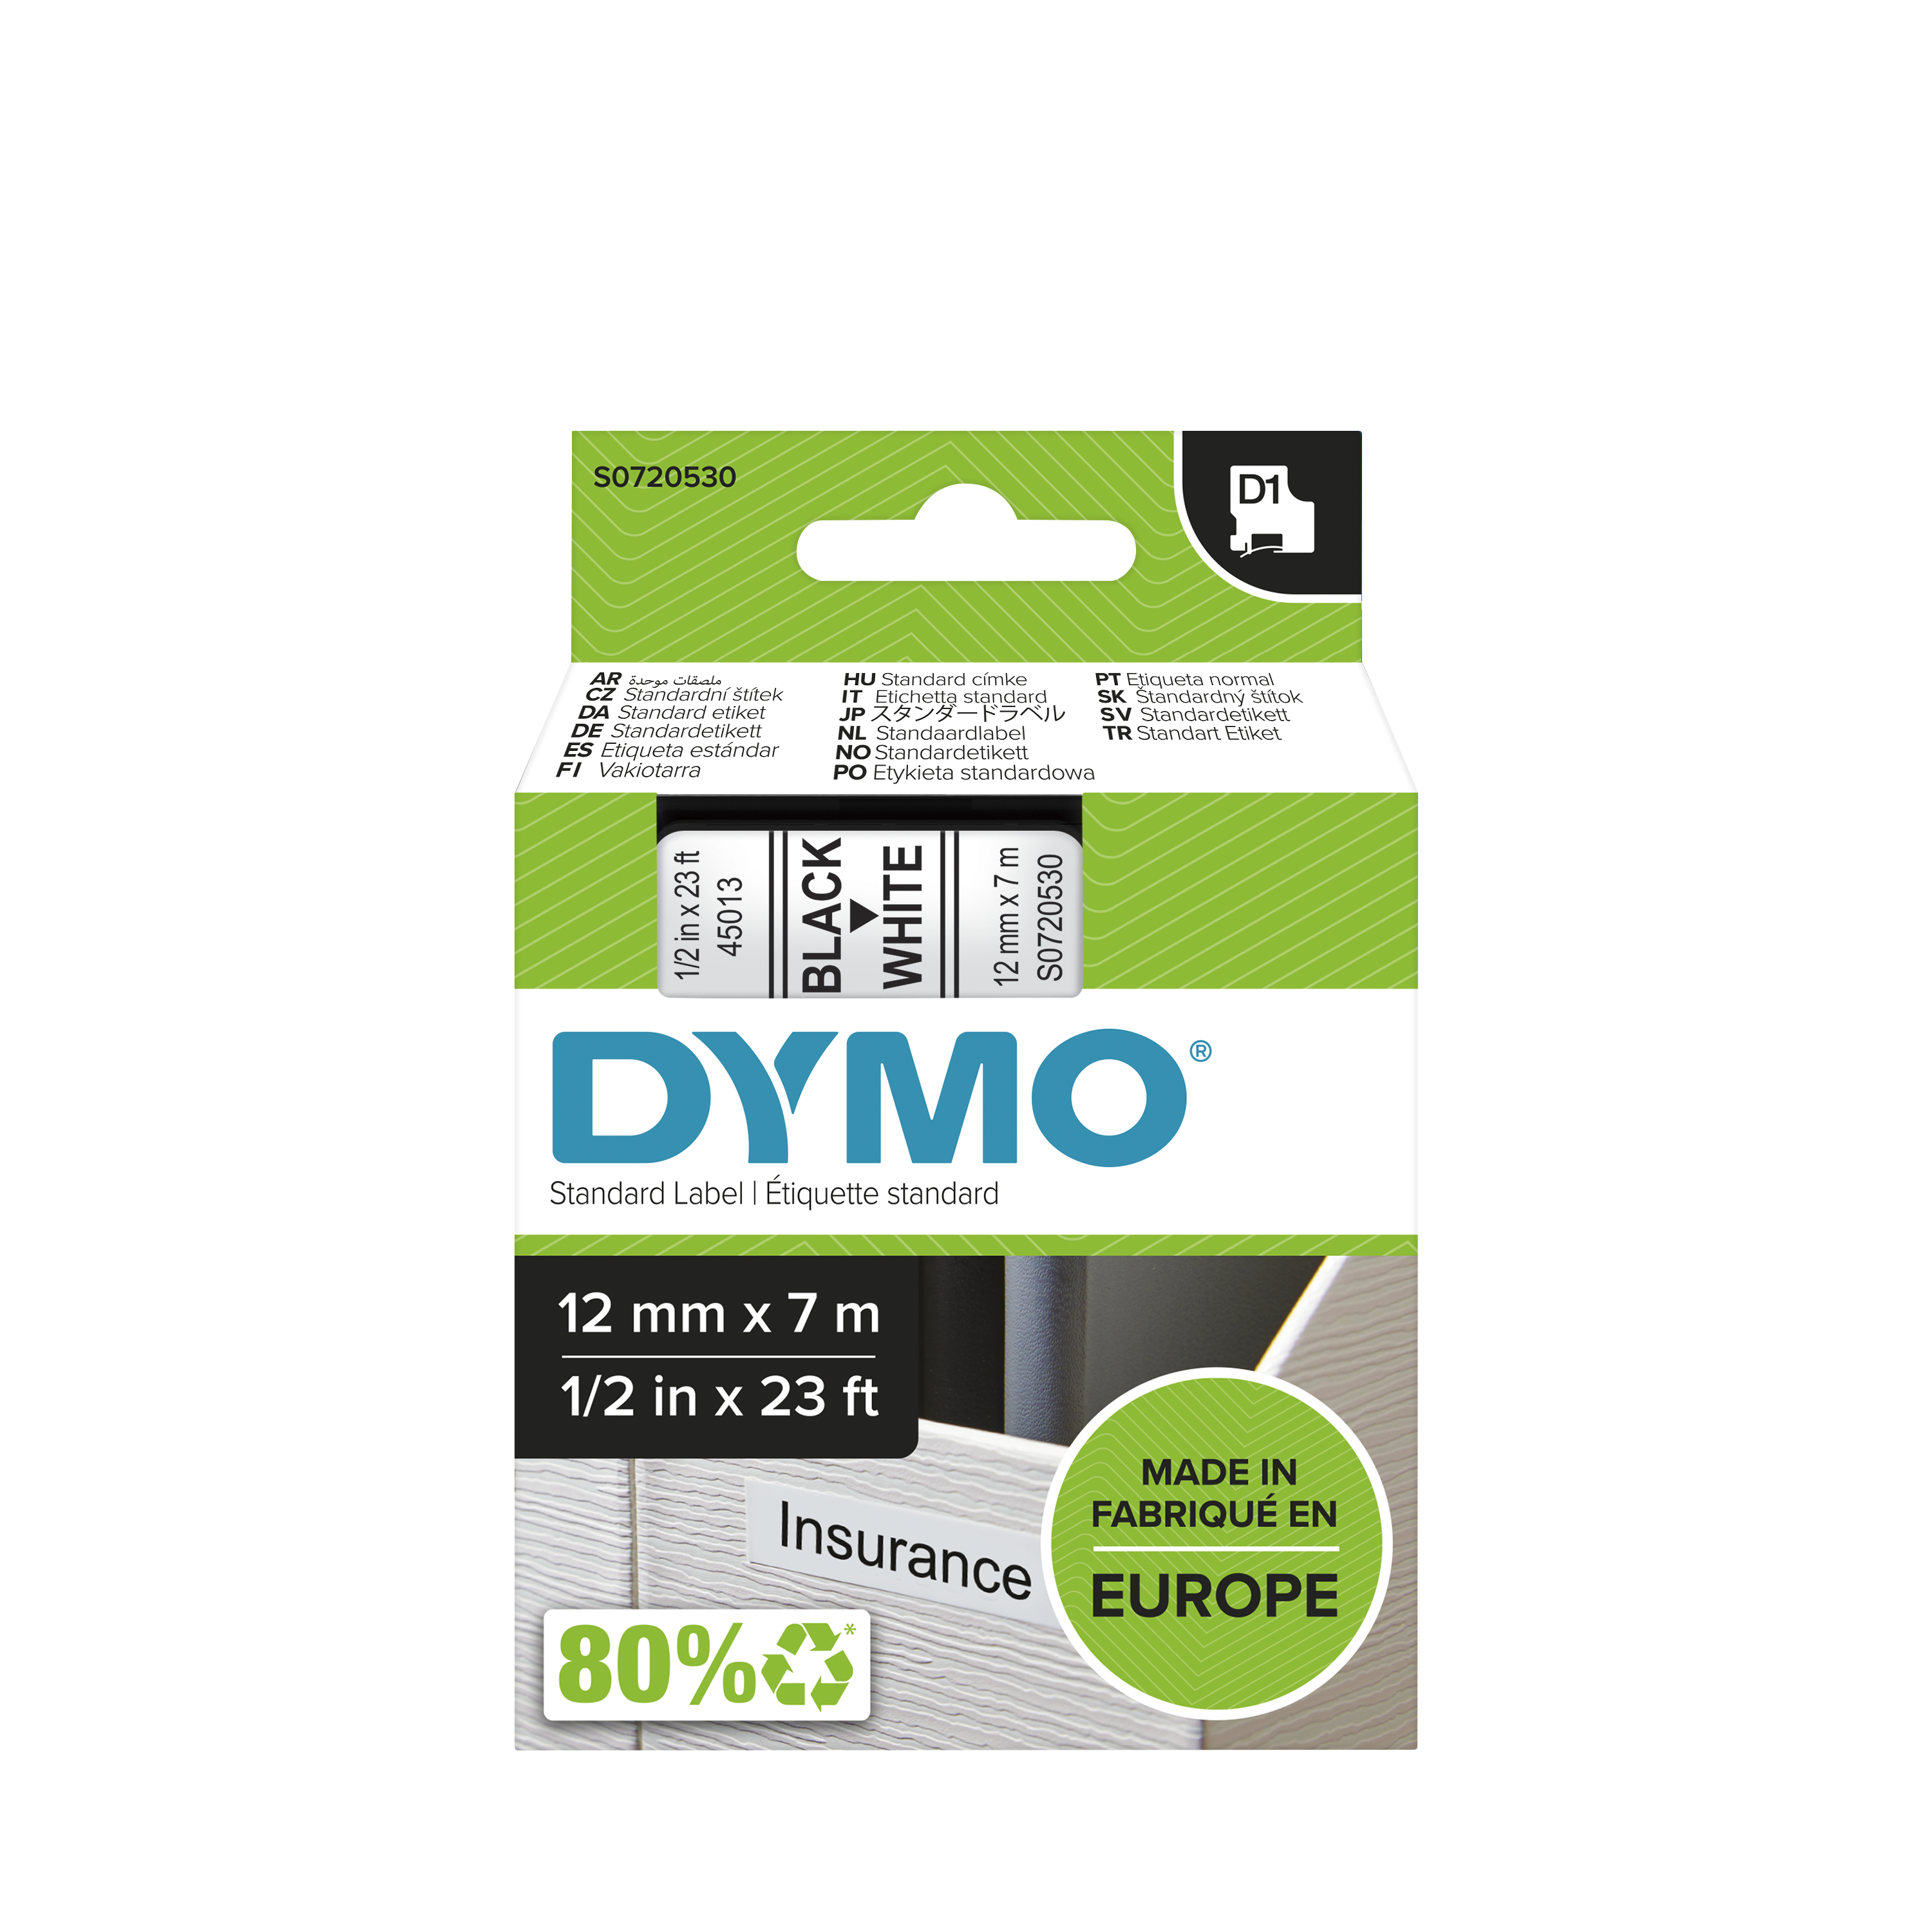 Dymo Black on White Label Printer Tape, 7 m Length, 12 mm Width